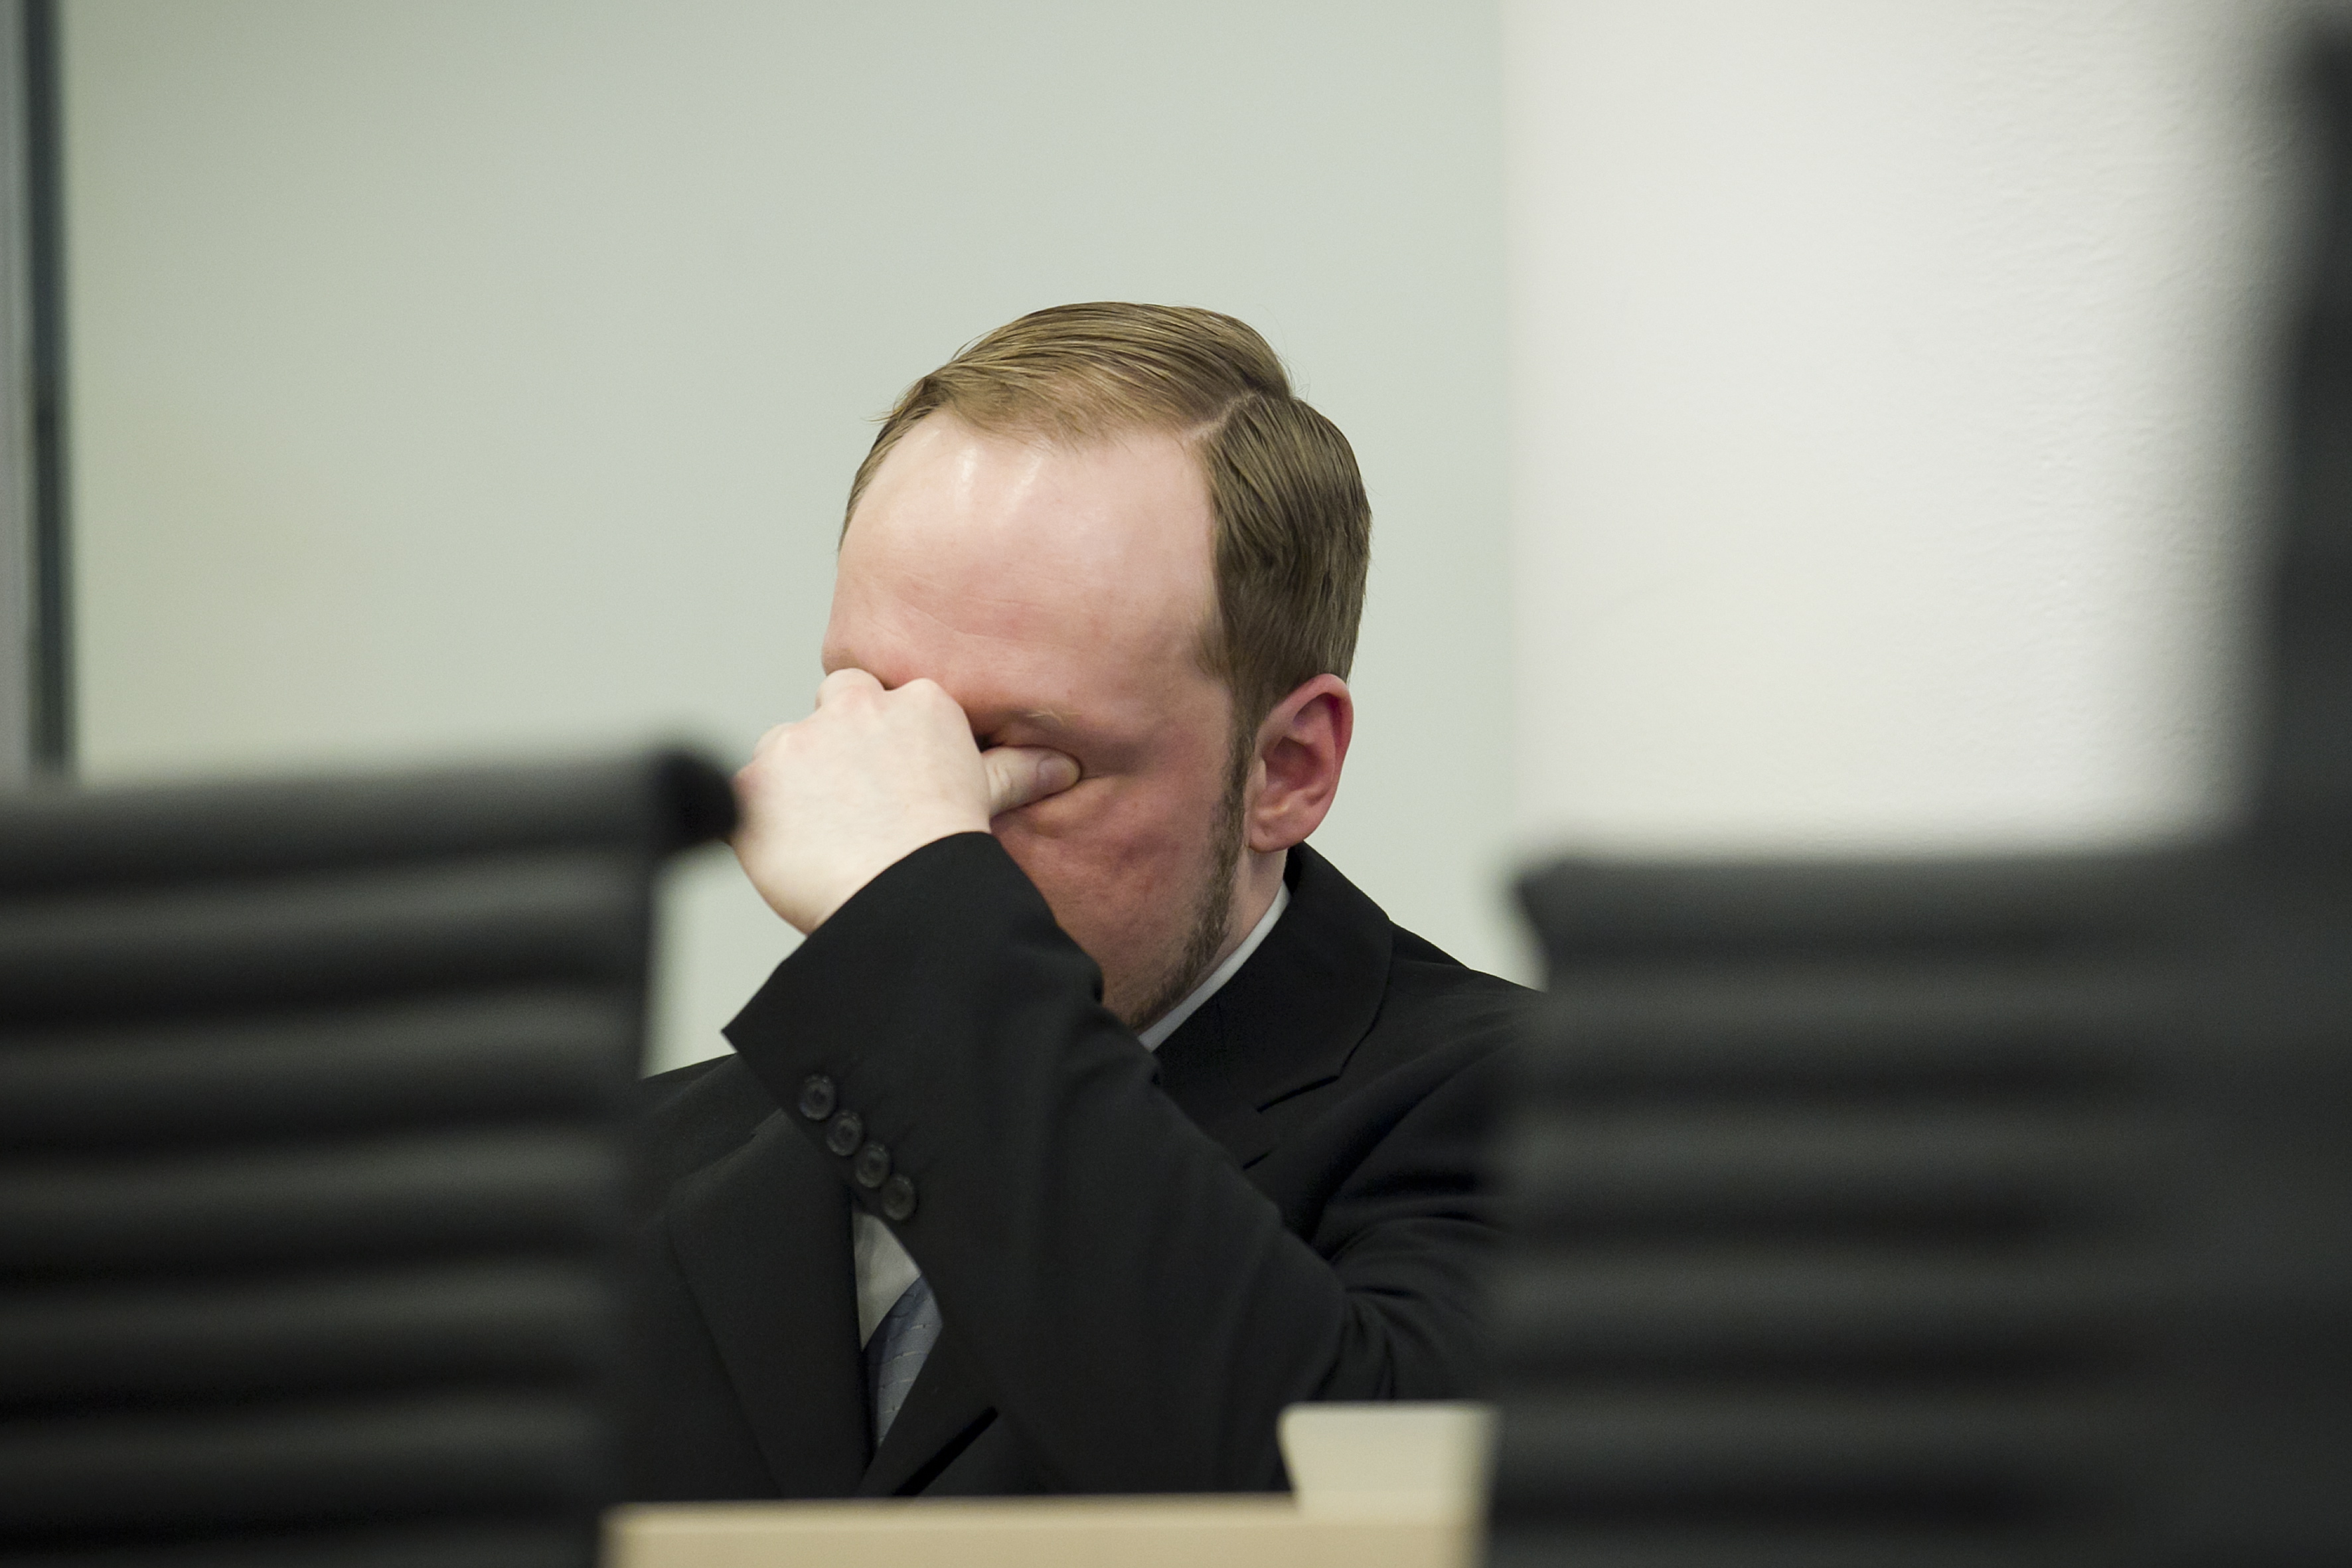 Norge, Anders Behring Breivik, Utøya, Oslo, Vittnesmål, Terrordåd